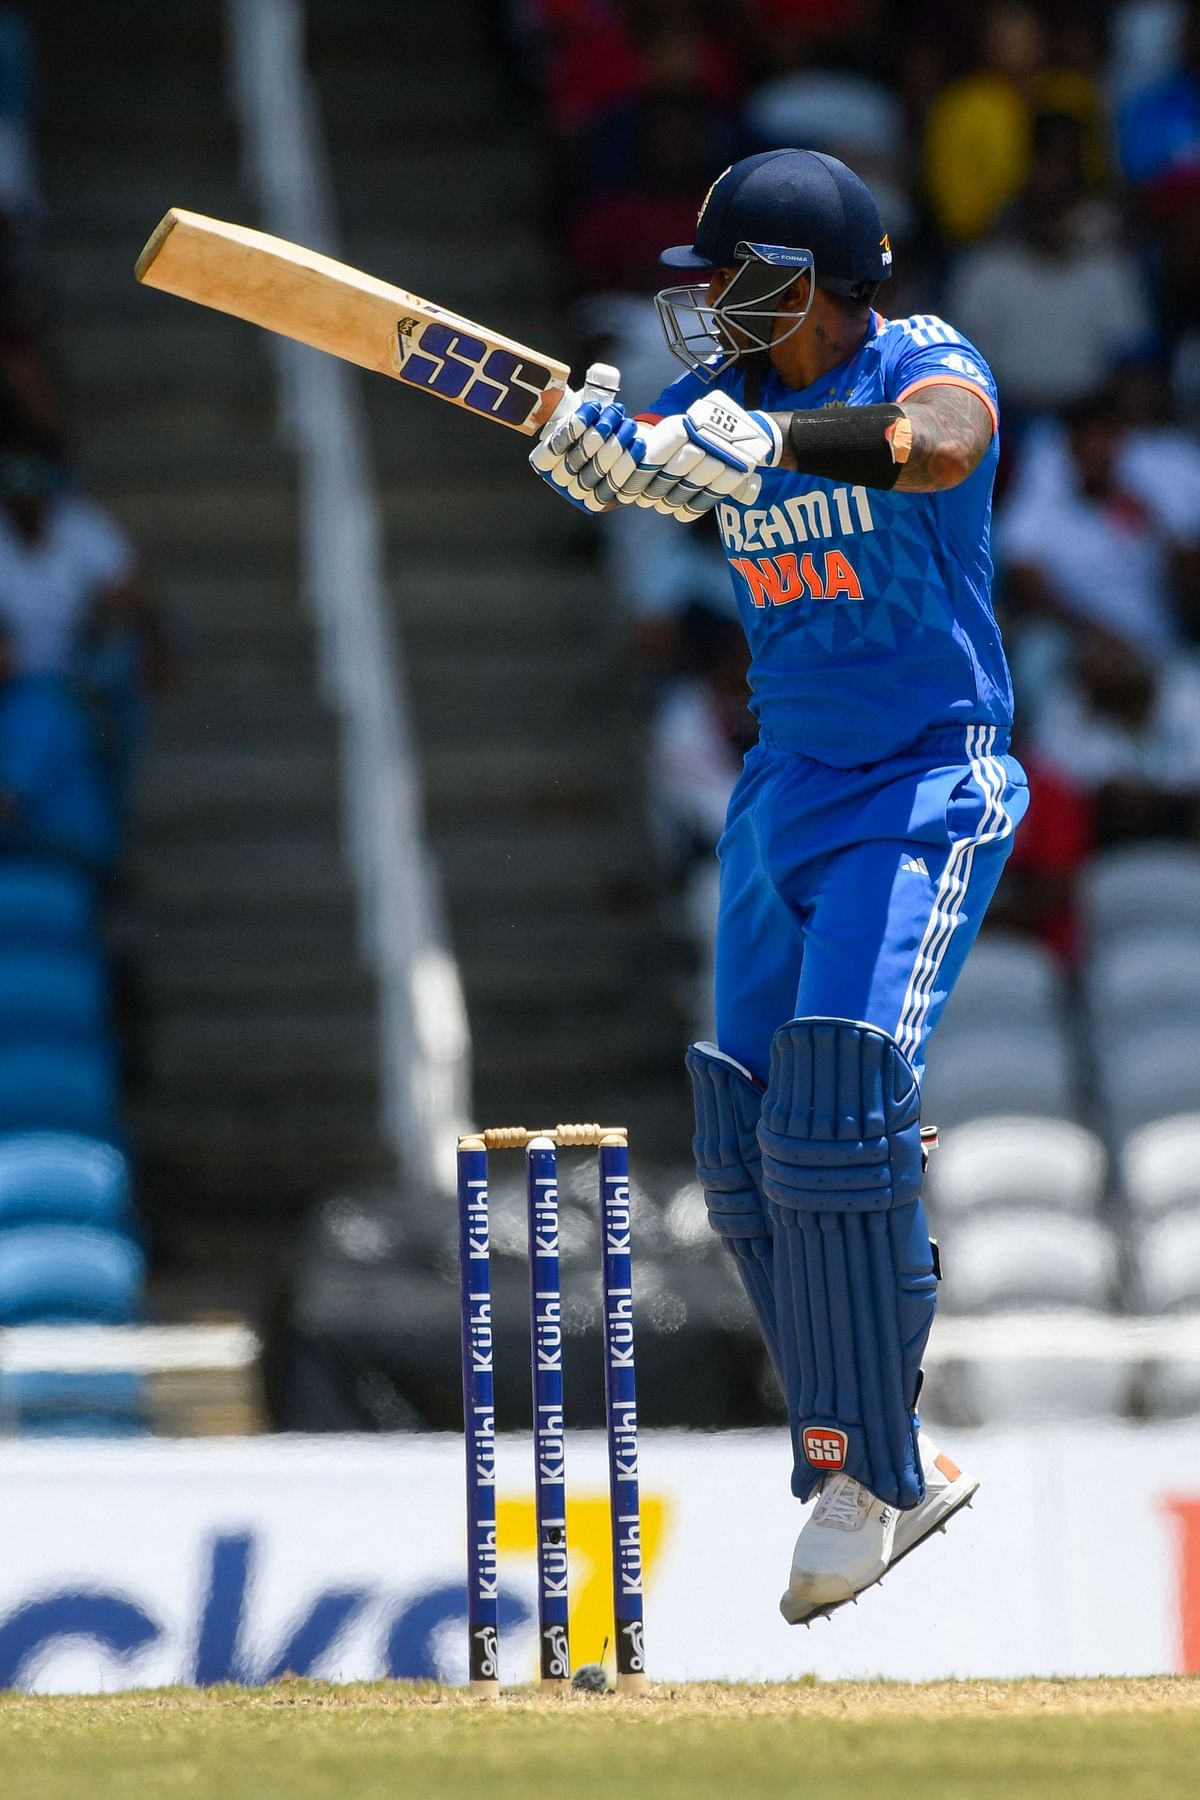 IND VS WI: 160 रन के लक्ष्य का पीछा करने उतरी टीम इंडिया ने 13 गेंद रहते हुए 164 रन बना लिये. 